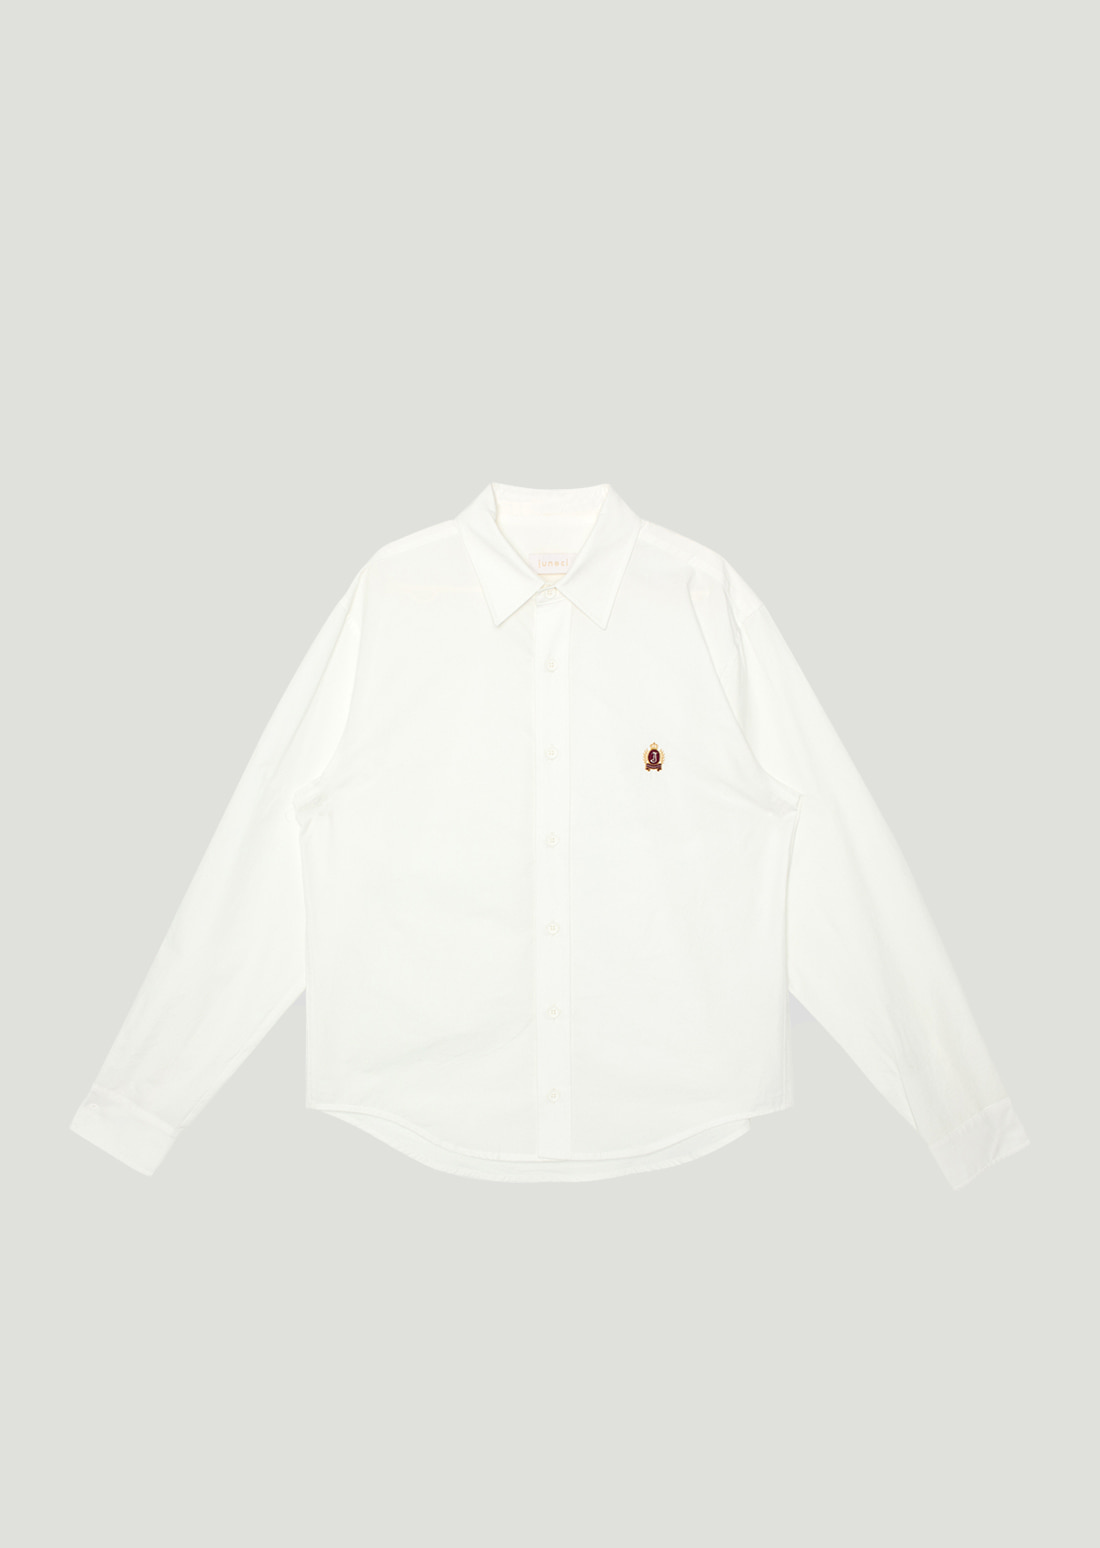 J Emblem Shirt (White)